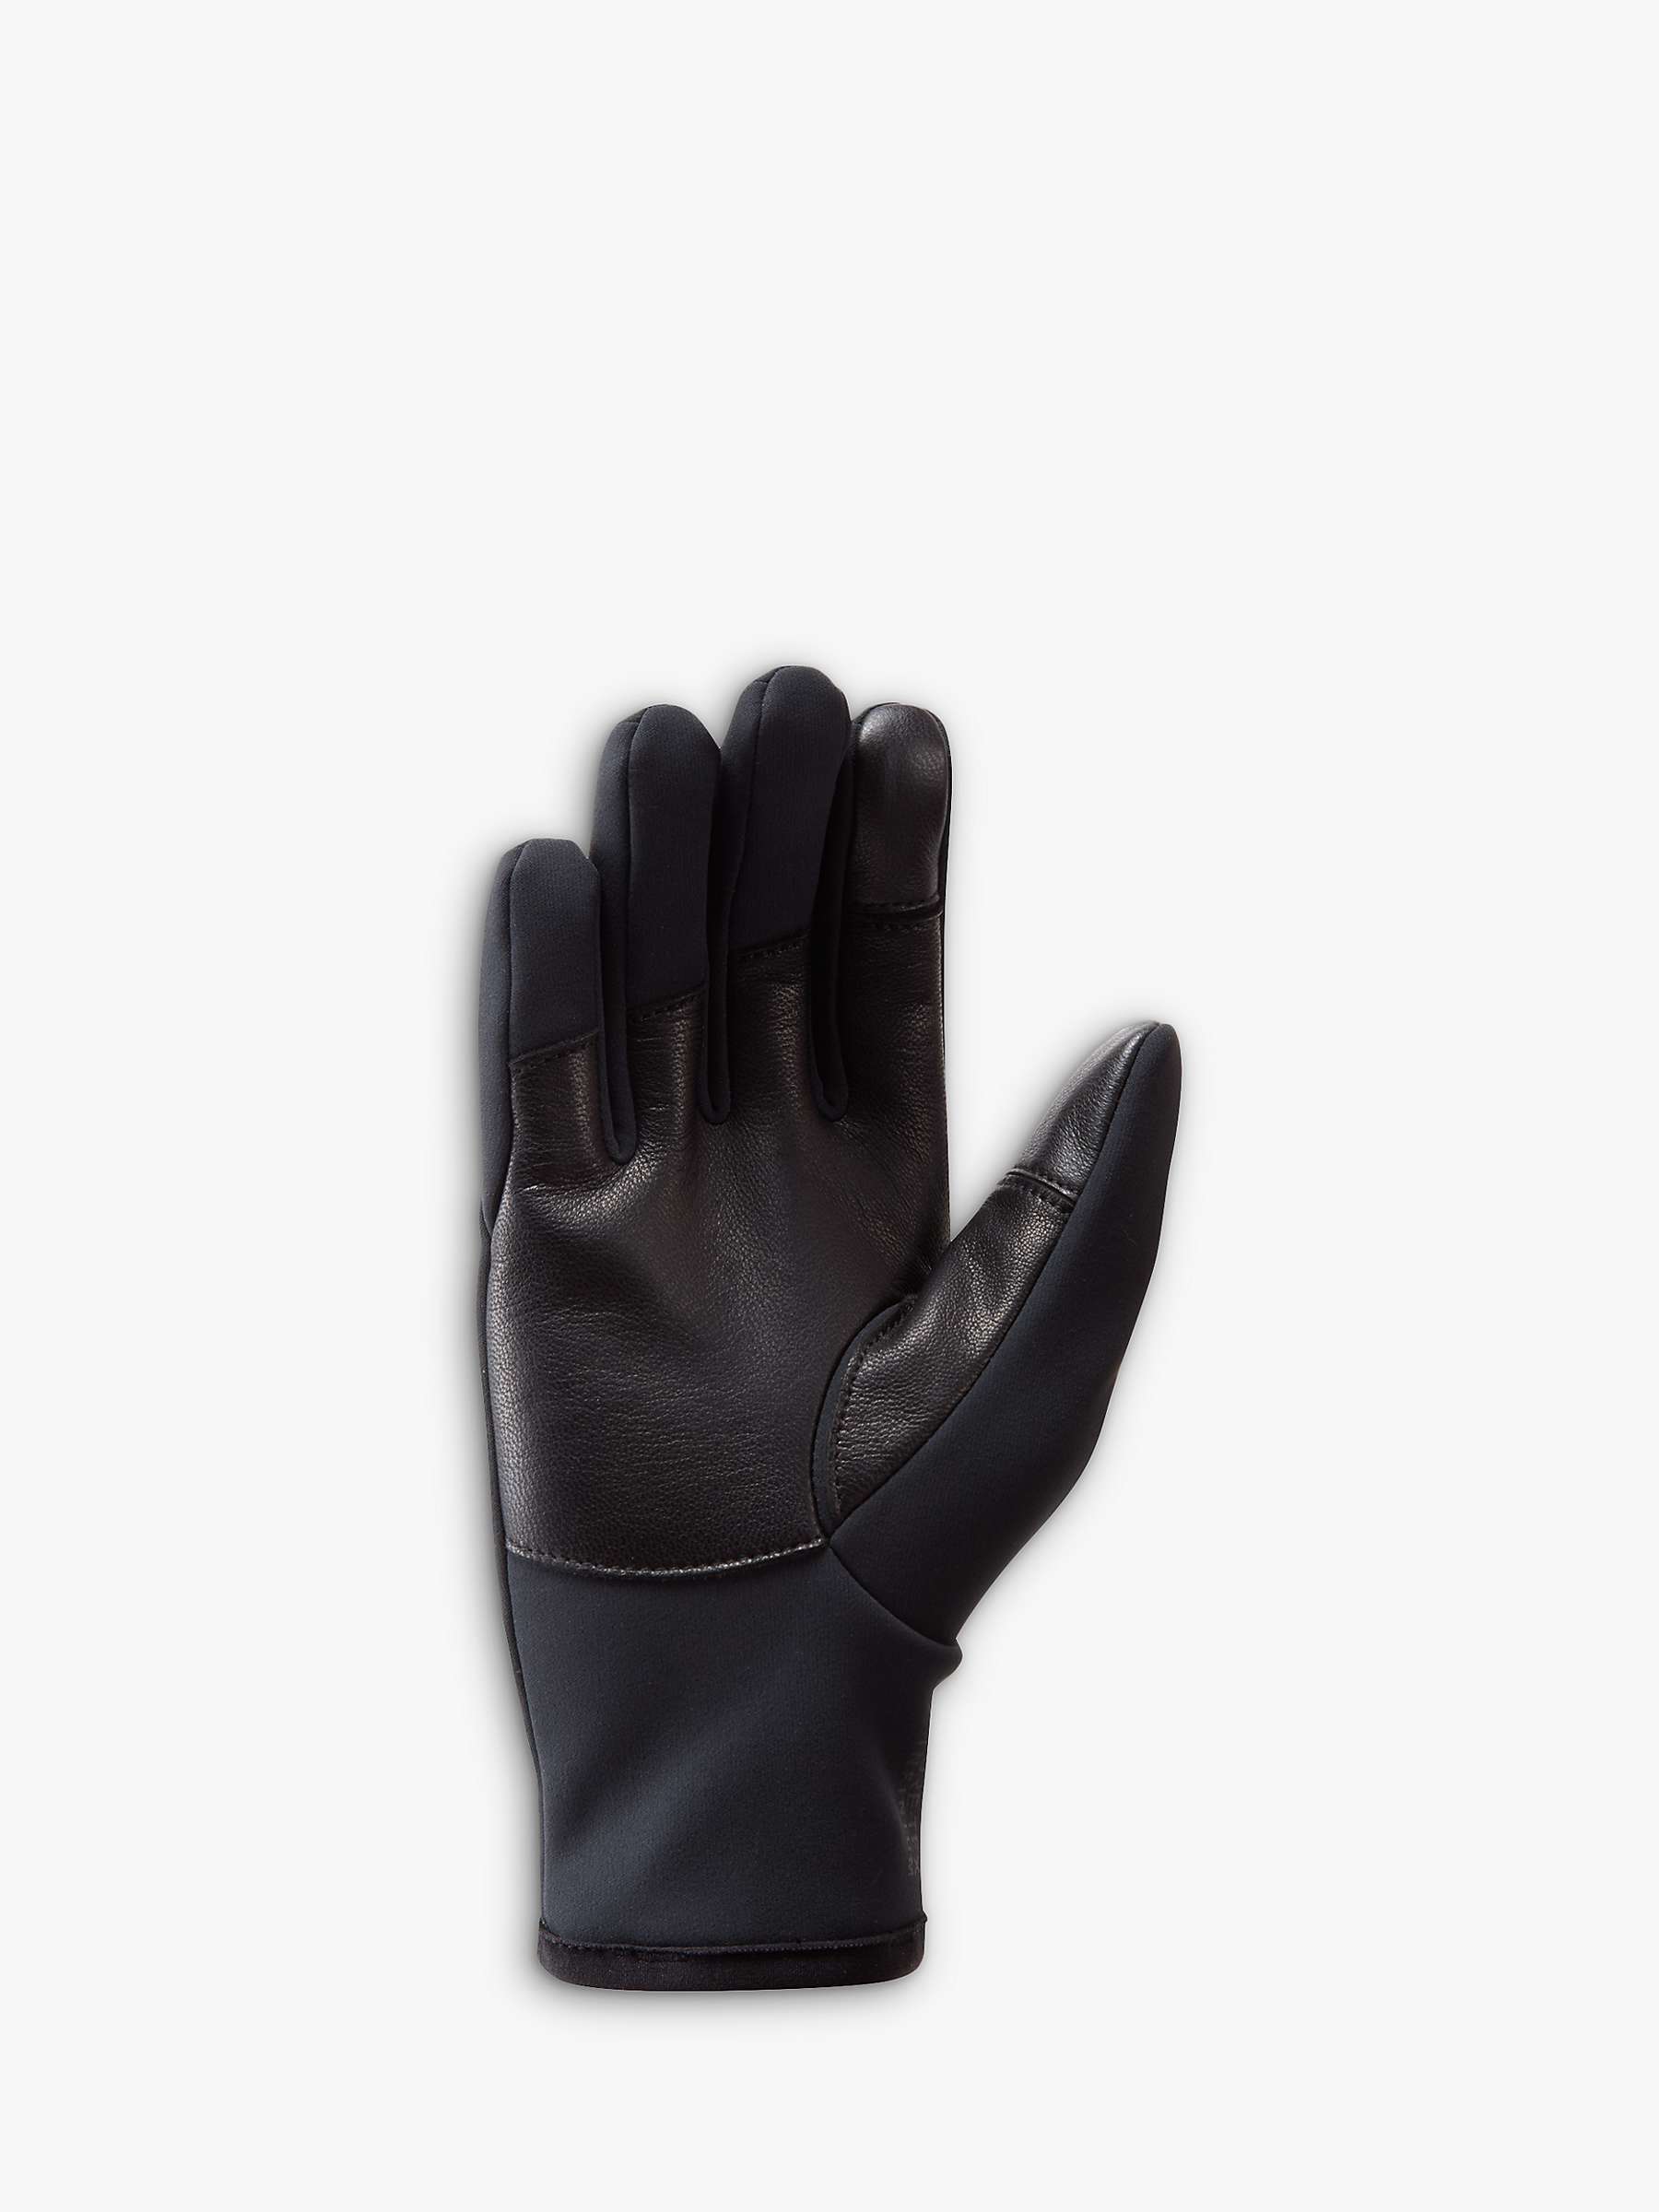 Buy Montane Women's Windjammer Lite Windproof Gloves, Black Online at johnlewis.com